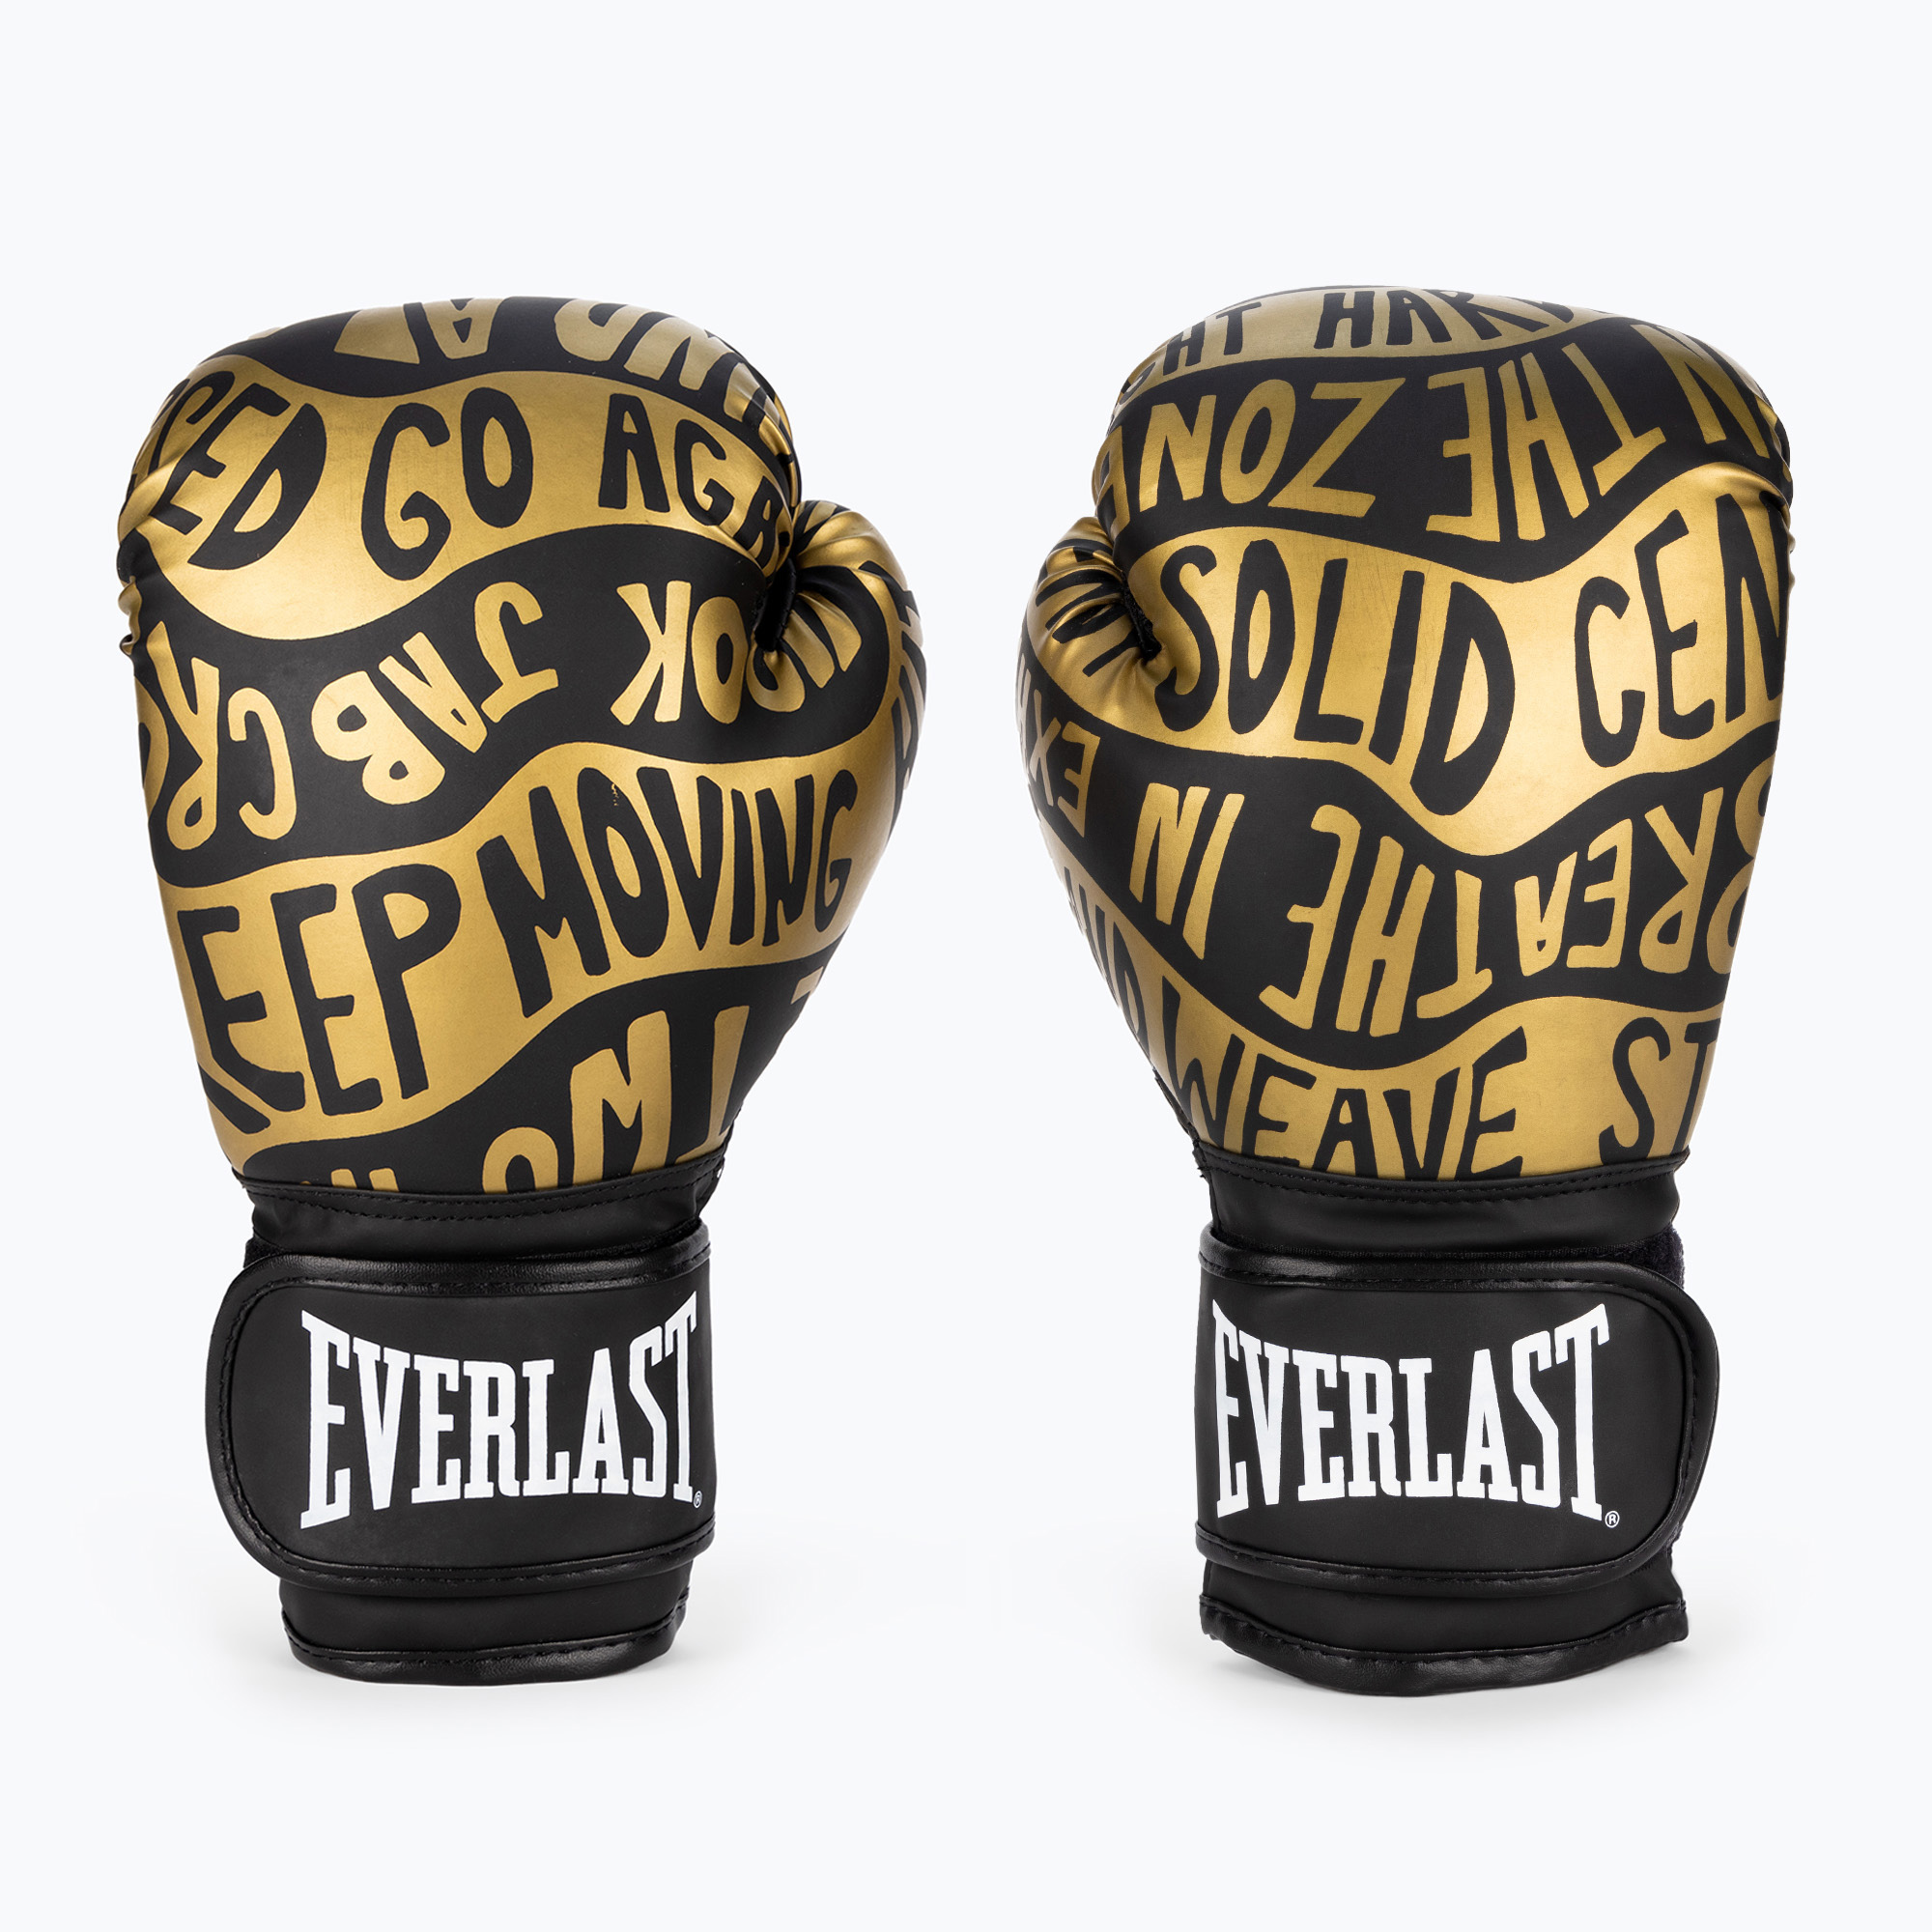 Boxerské rukavice Everlast Spark black/gold EV2150 BLK/GLD